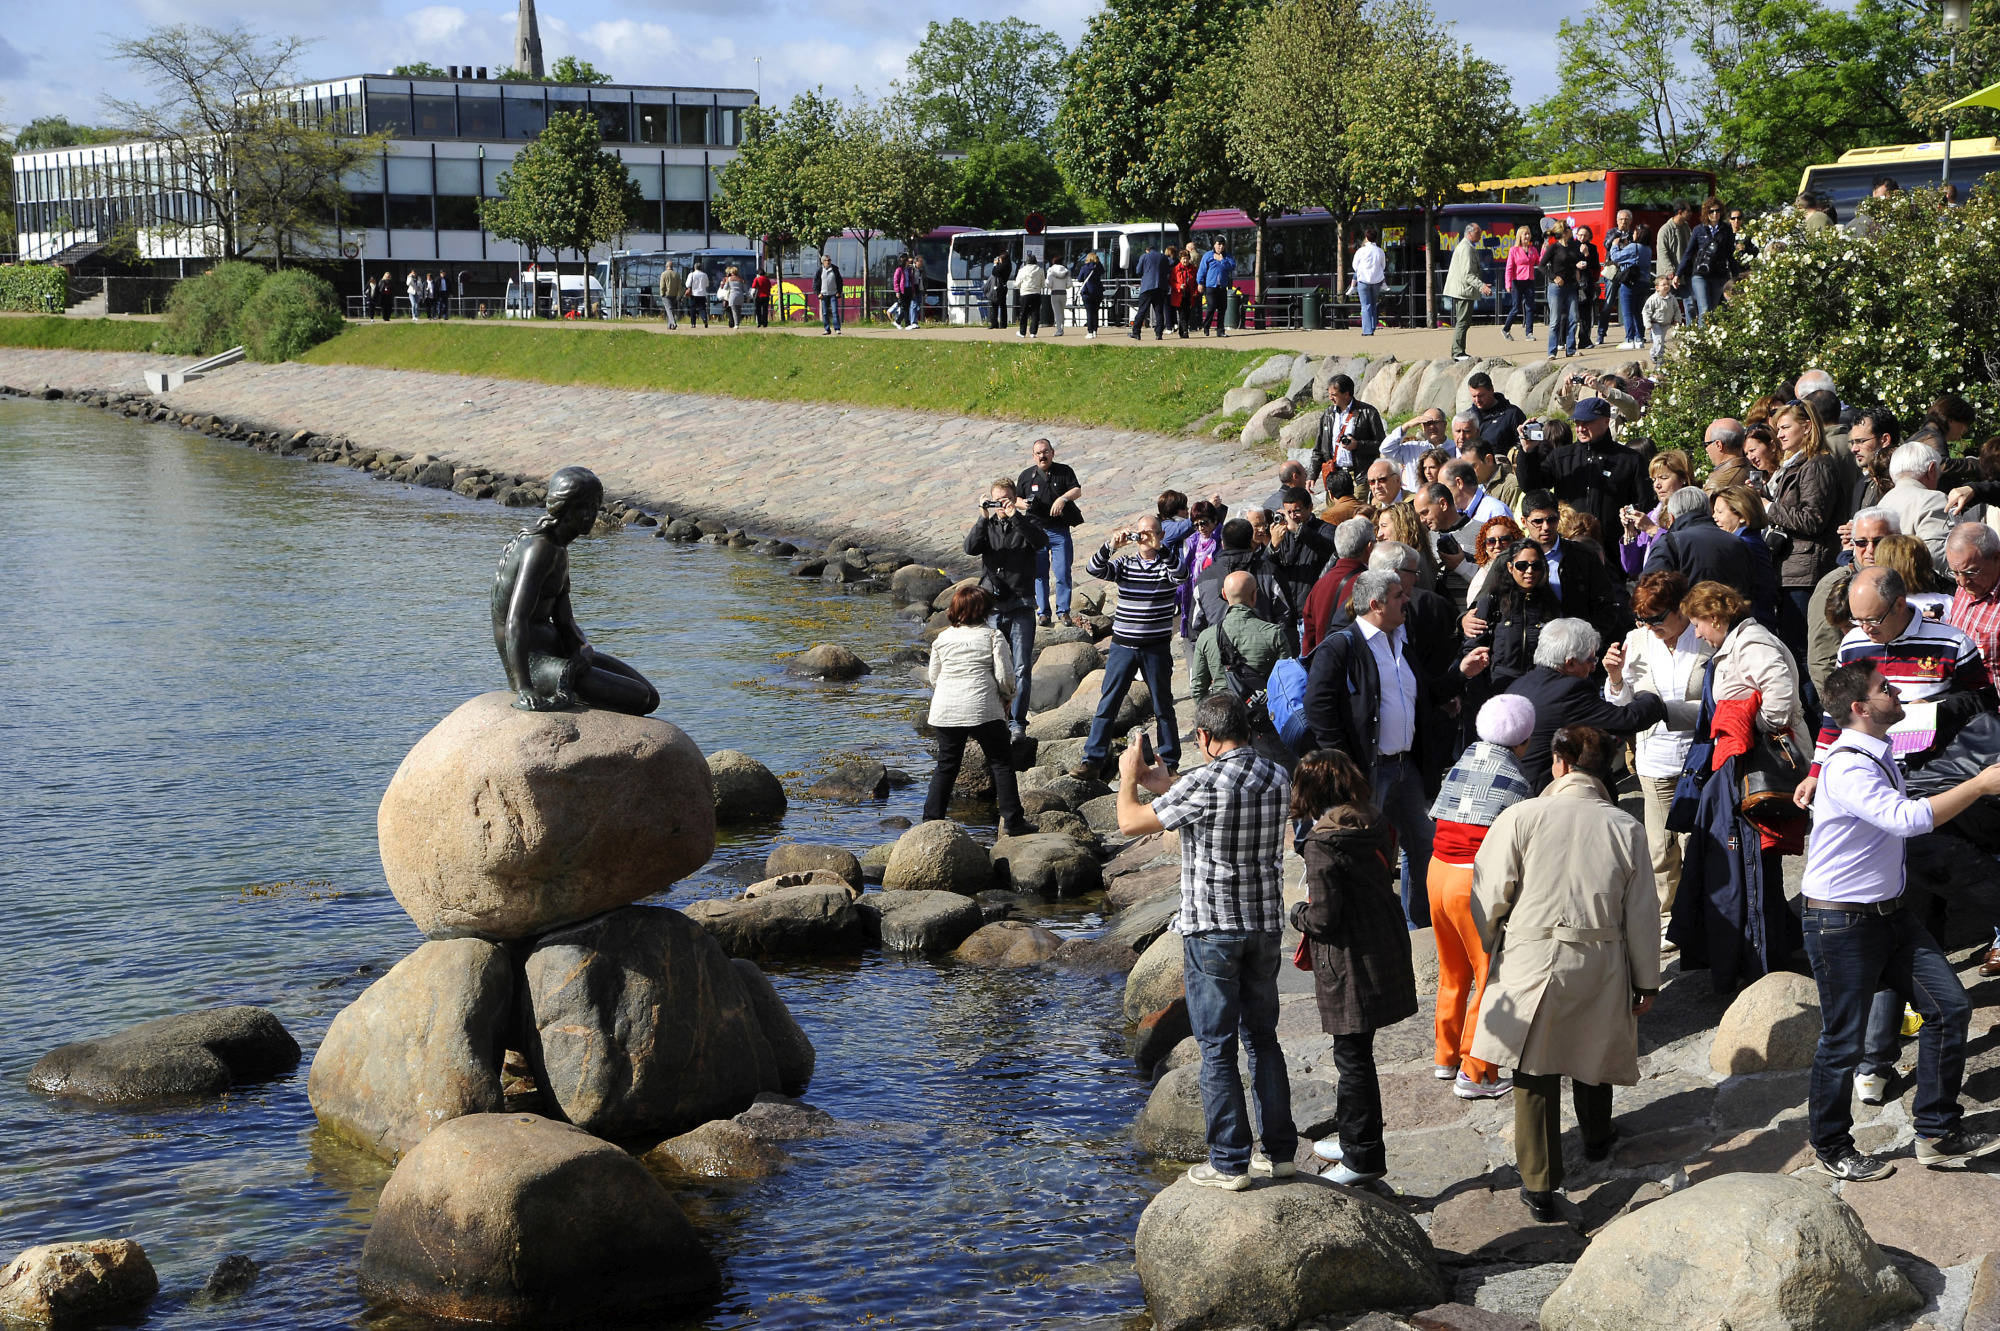 The Little Mermaid (1) | Copenhagen (2) | Pictures | Denmark in Global ...